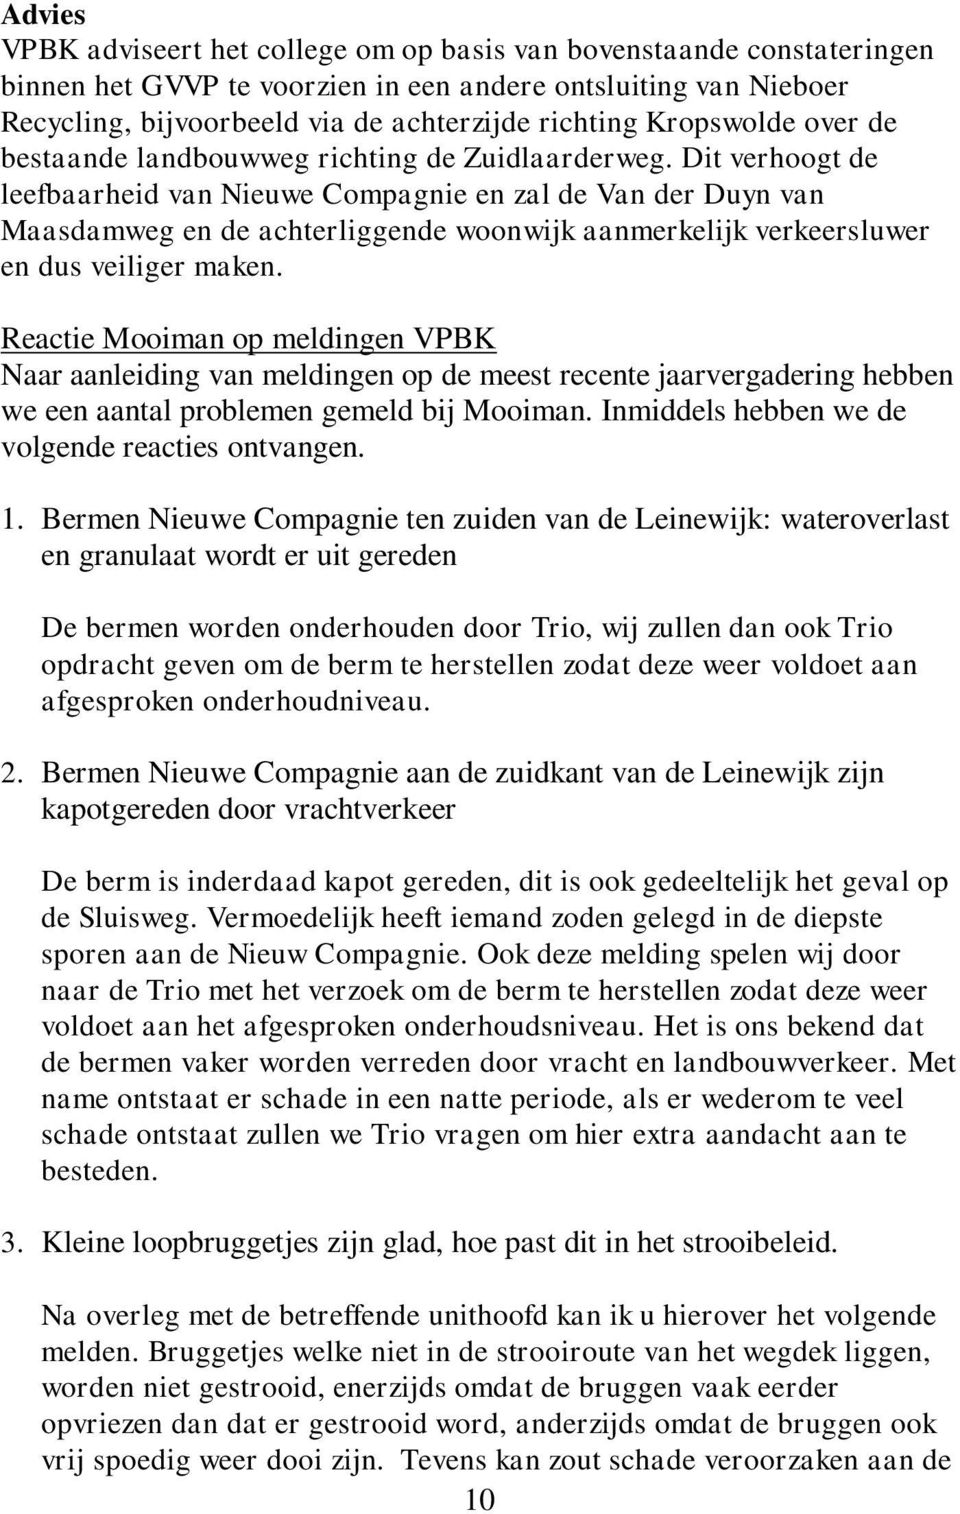 Dit verhoogt de leefbaarheid van Nieuwe Compagnie en zal de Van der Duyn van Maasdamweg en de achterliggende woonwijk aanmerkelijk verkeersluwer en dus veiliger maken.